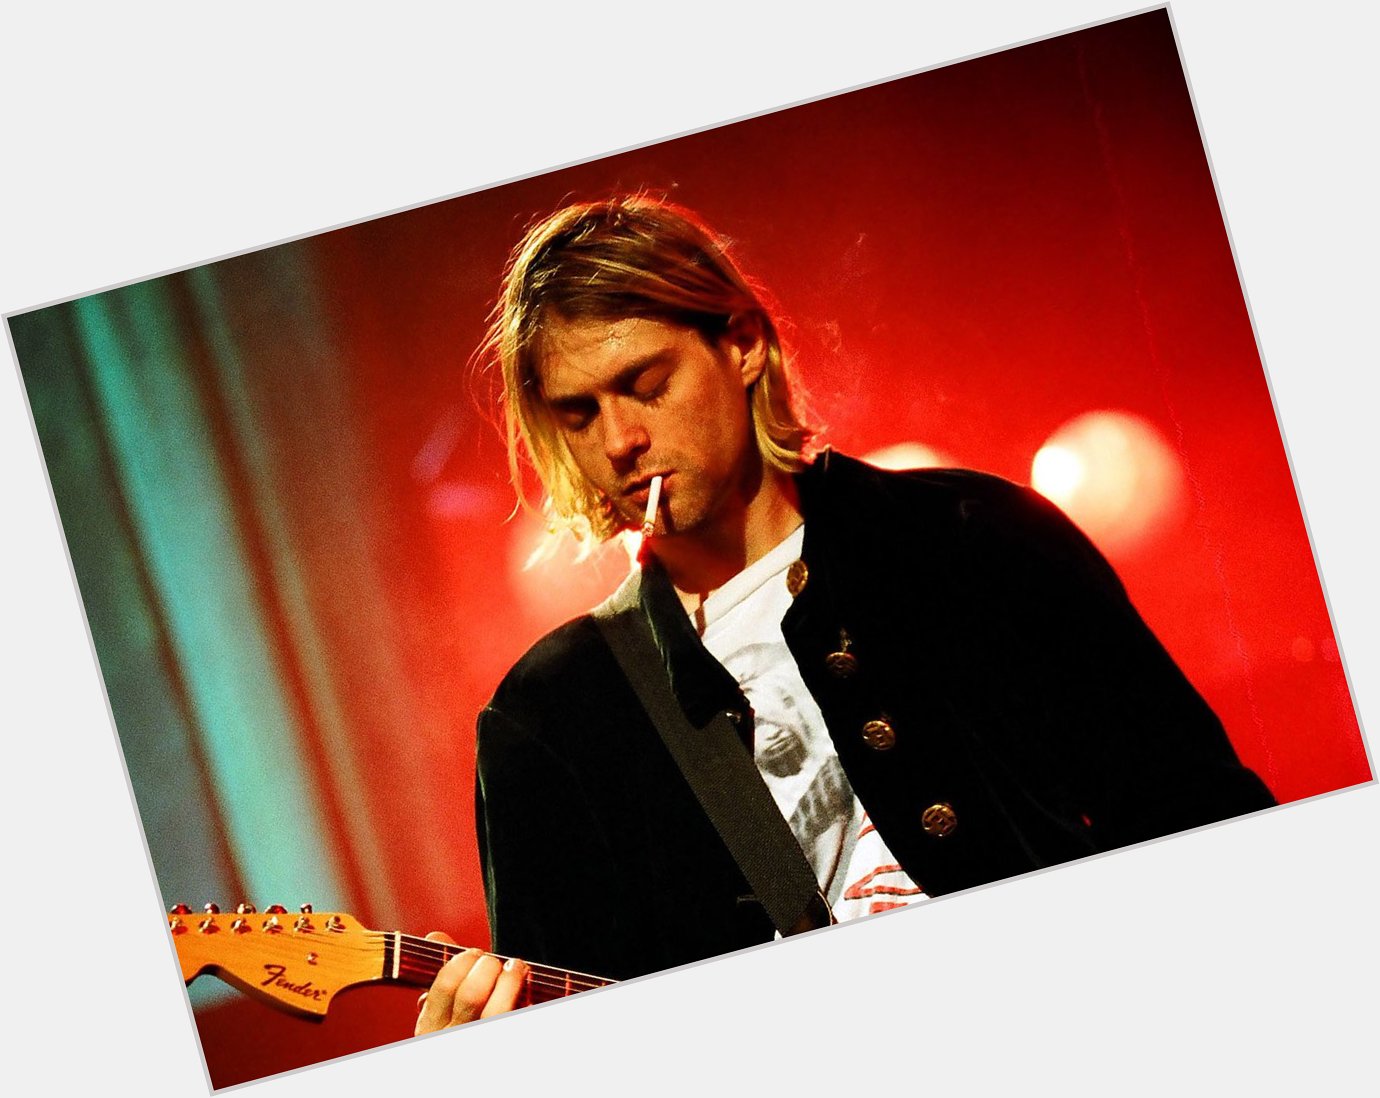 Happy birthday, Kurt Cobain. My forever love  